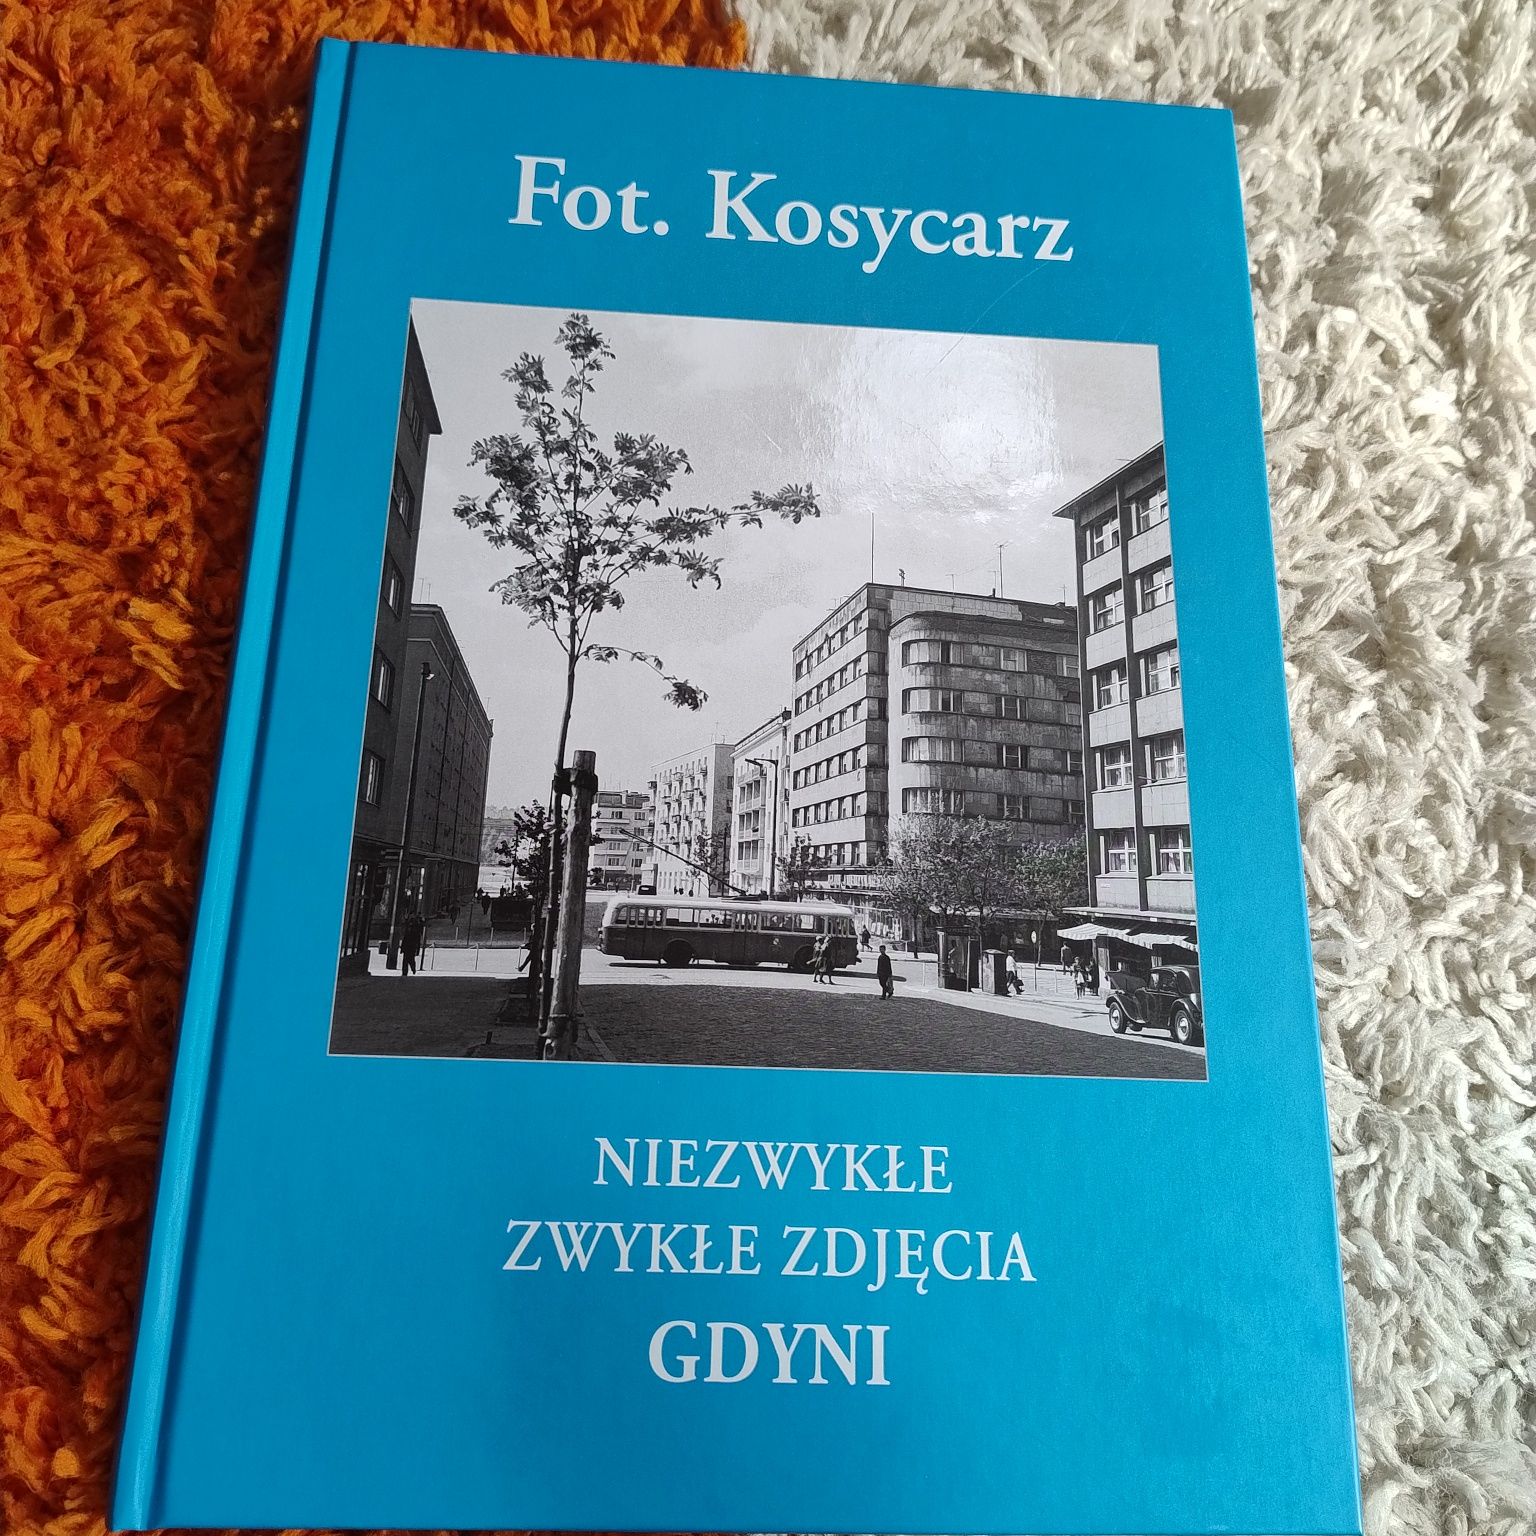 Album o Gdyni, zdjęcia Kosycarz,